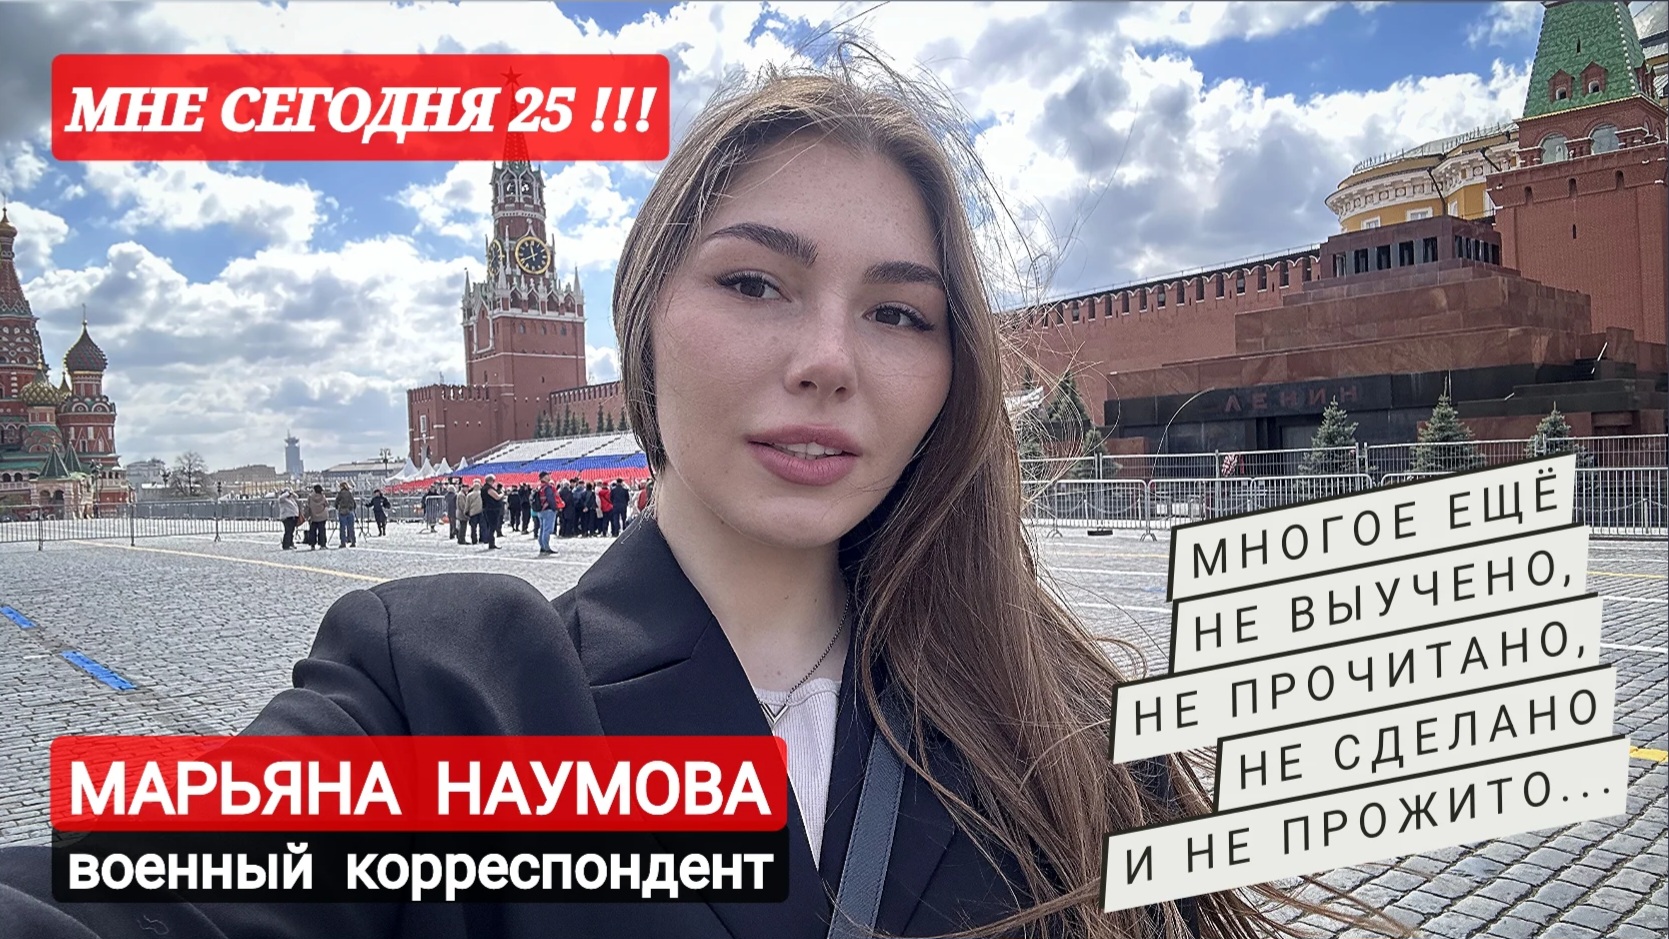 МНЕ СЕГОДНЯ ДВАДЦАТЬ ПЯТЬ! ПРИНИМАЮ ПОЗДРАВЛЕНИЯ!! : военный корреспондент Марьяна Наумова